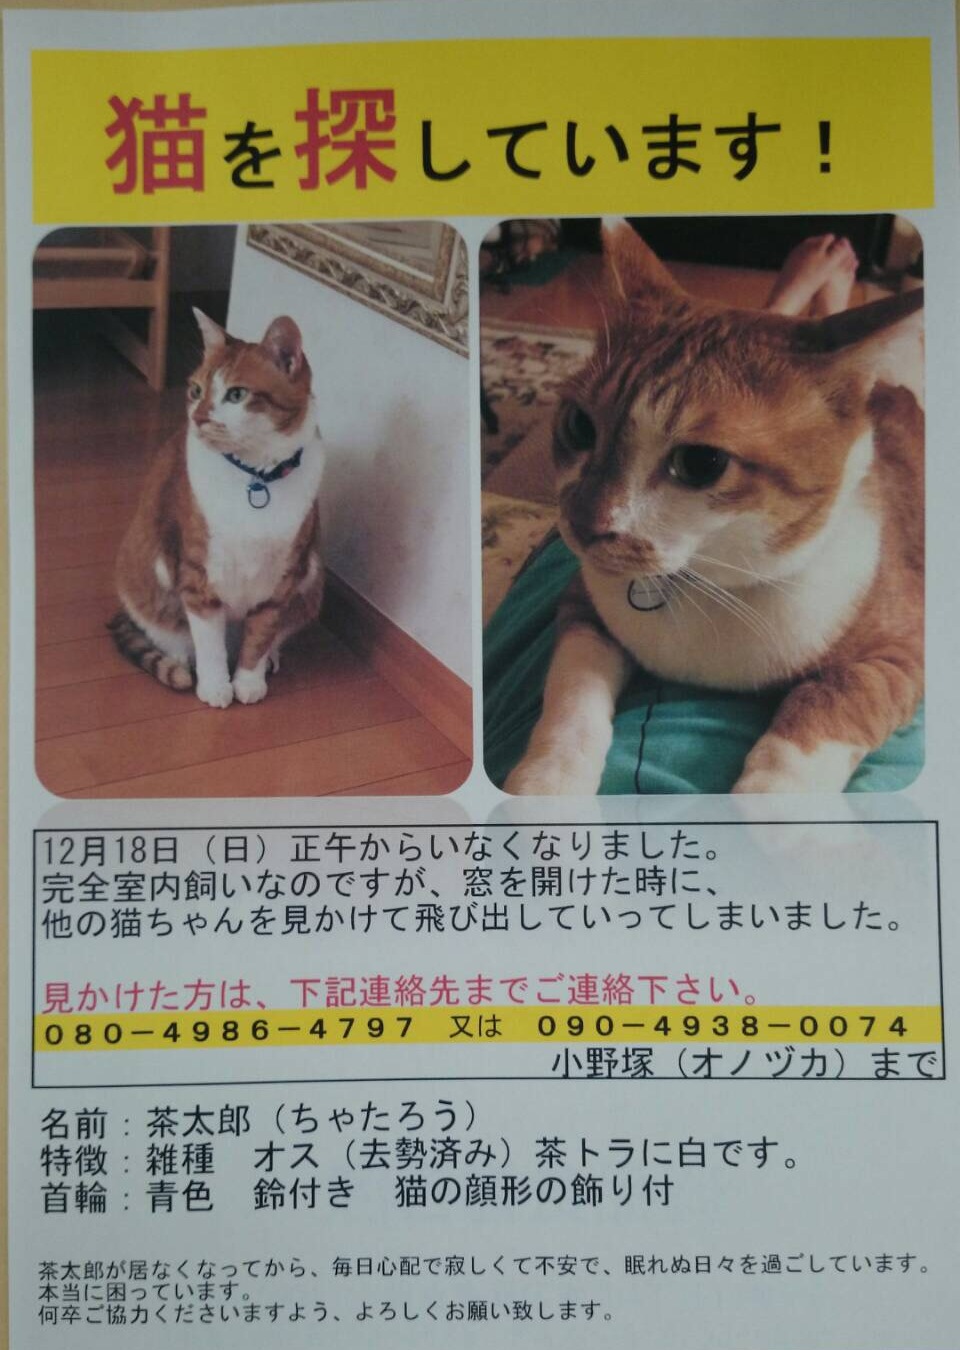 行方不明の猫について 幸手東武団地自治会